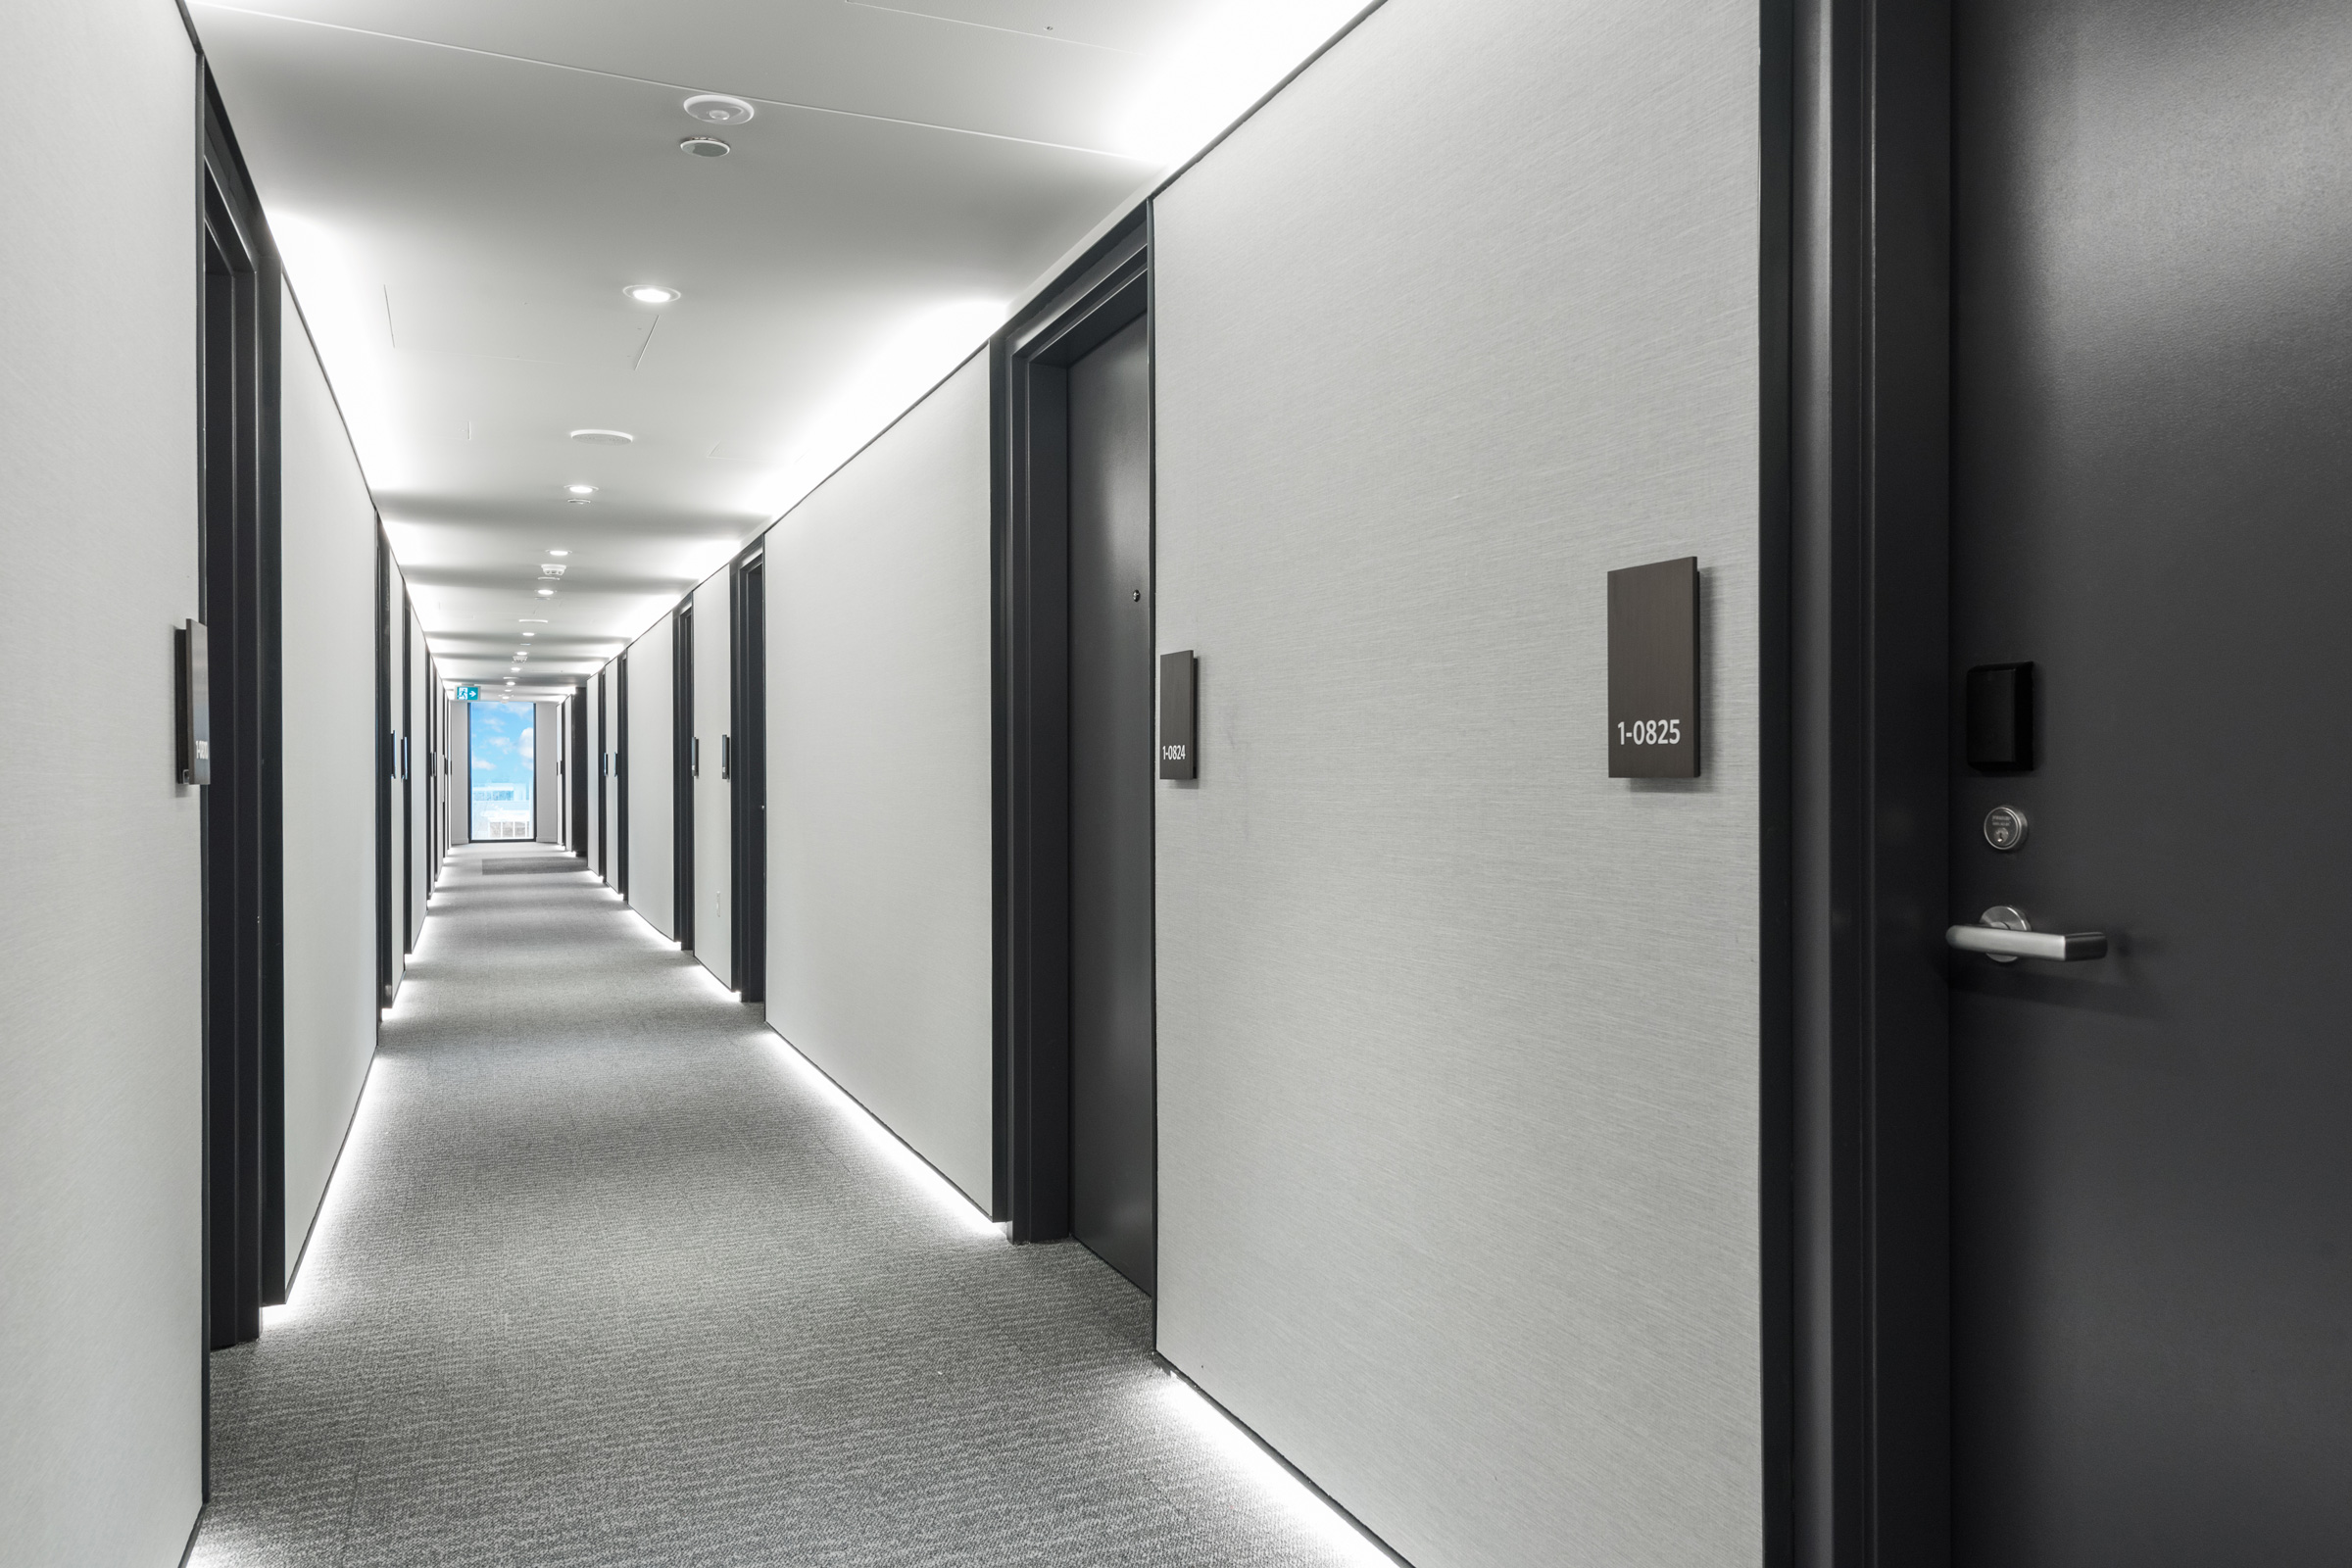 Photo of a beatifully-lit hallway with grey walls, black doors and room number plates, and a full-height window at the end opening onto blue sky at q̓əlɬaləməcən leləm̓